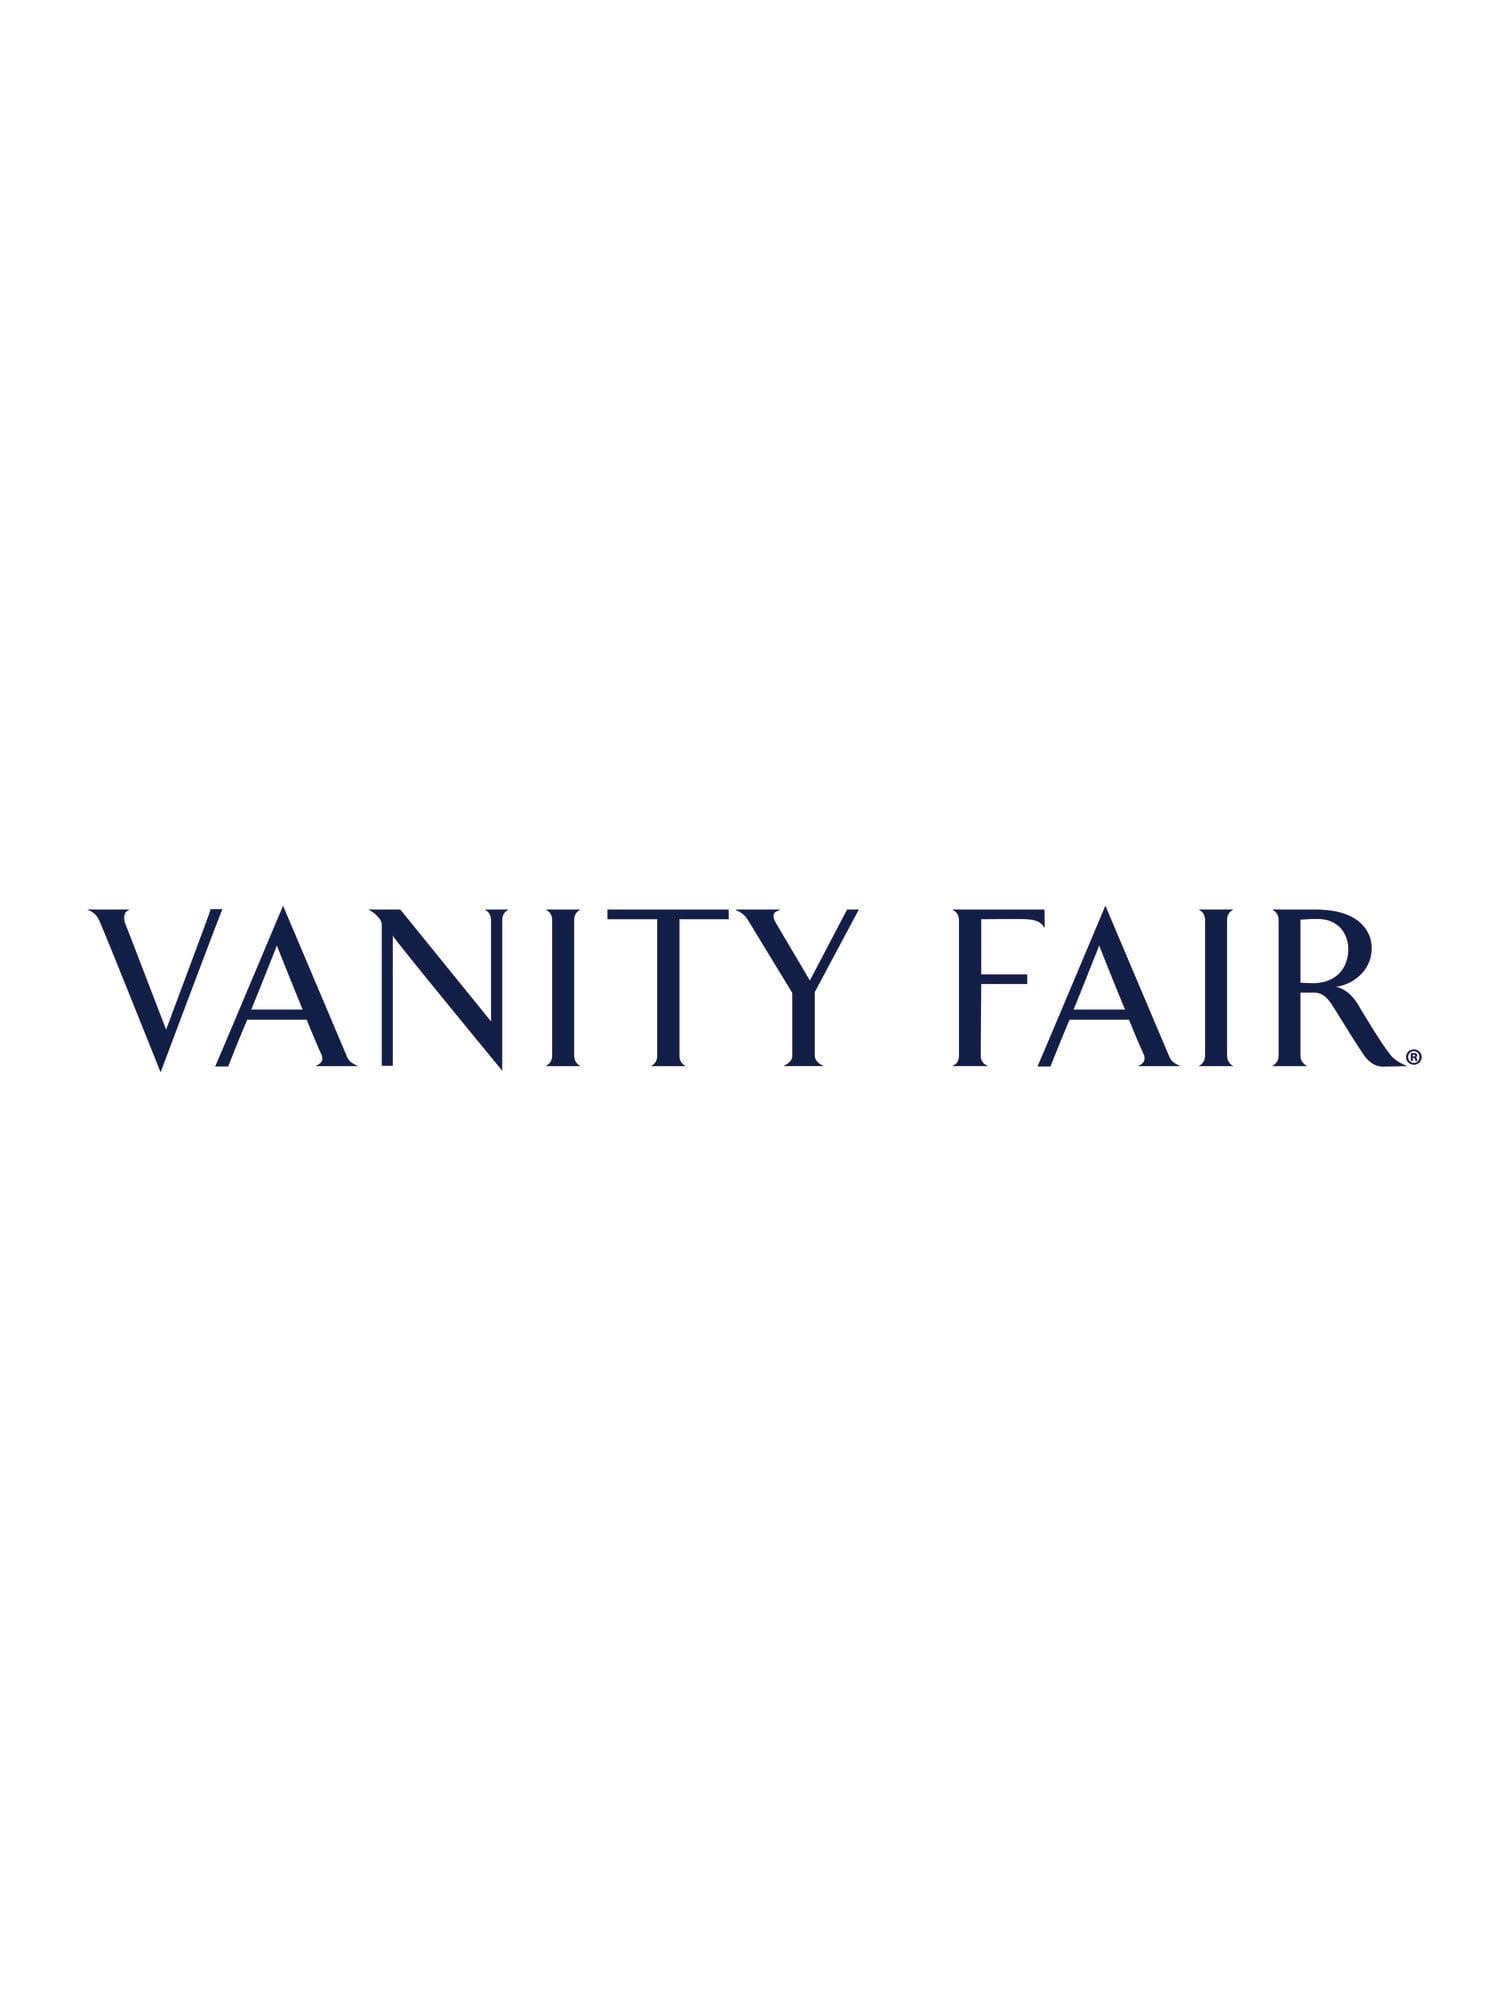 Vanity Fair Women's Women's Full Slips for Under Dresses 1010322